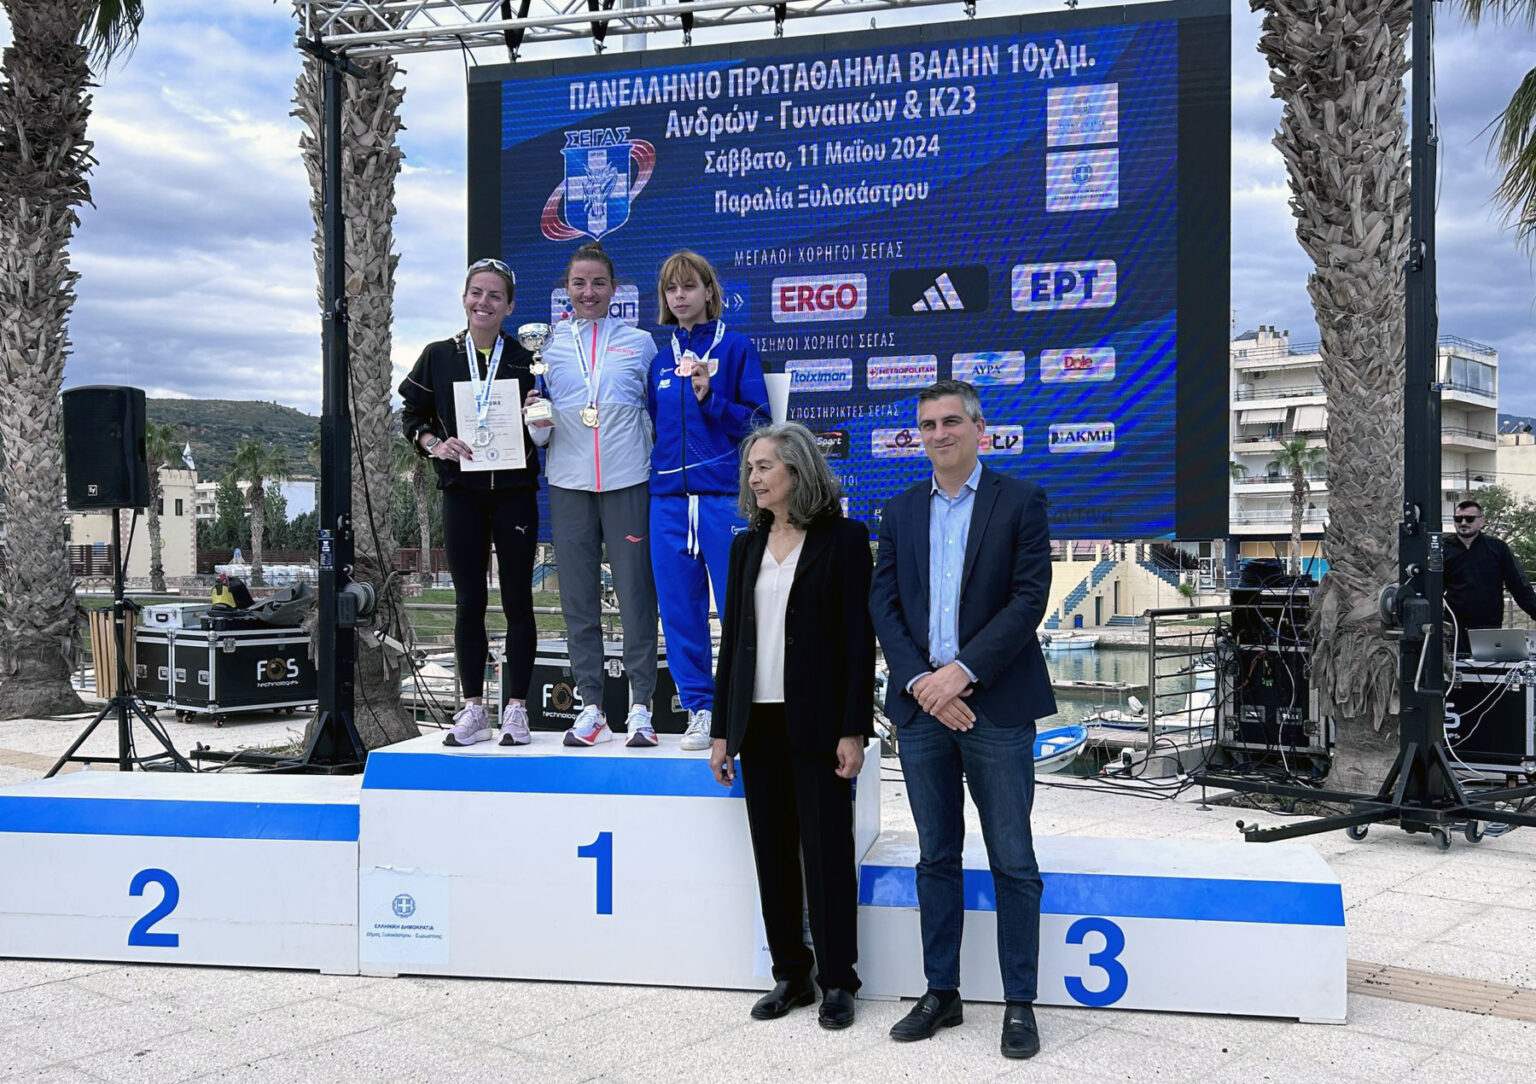 3η θέση για την Όλγα Φιάσκα στο Πανελλήνιο Πρωτάθλημα Βάδην 10χμ